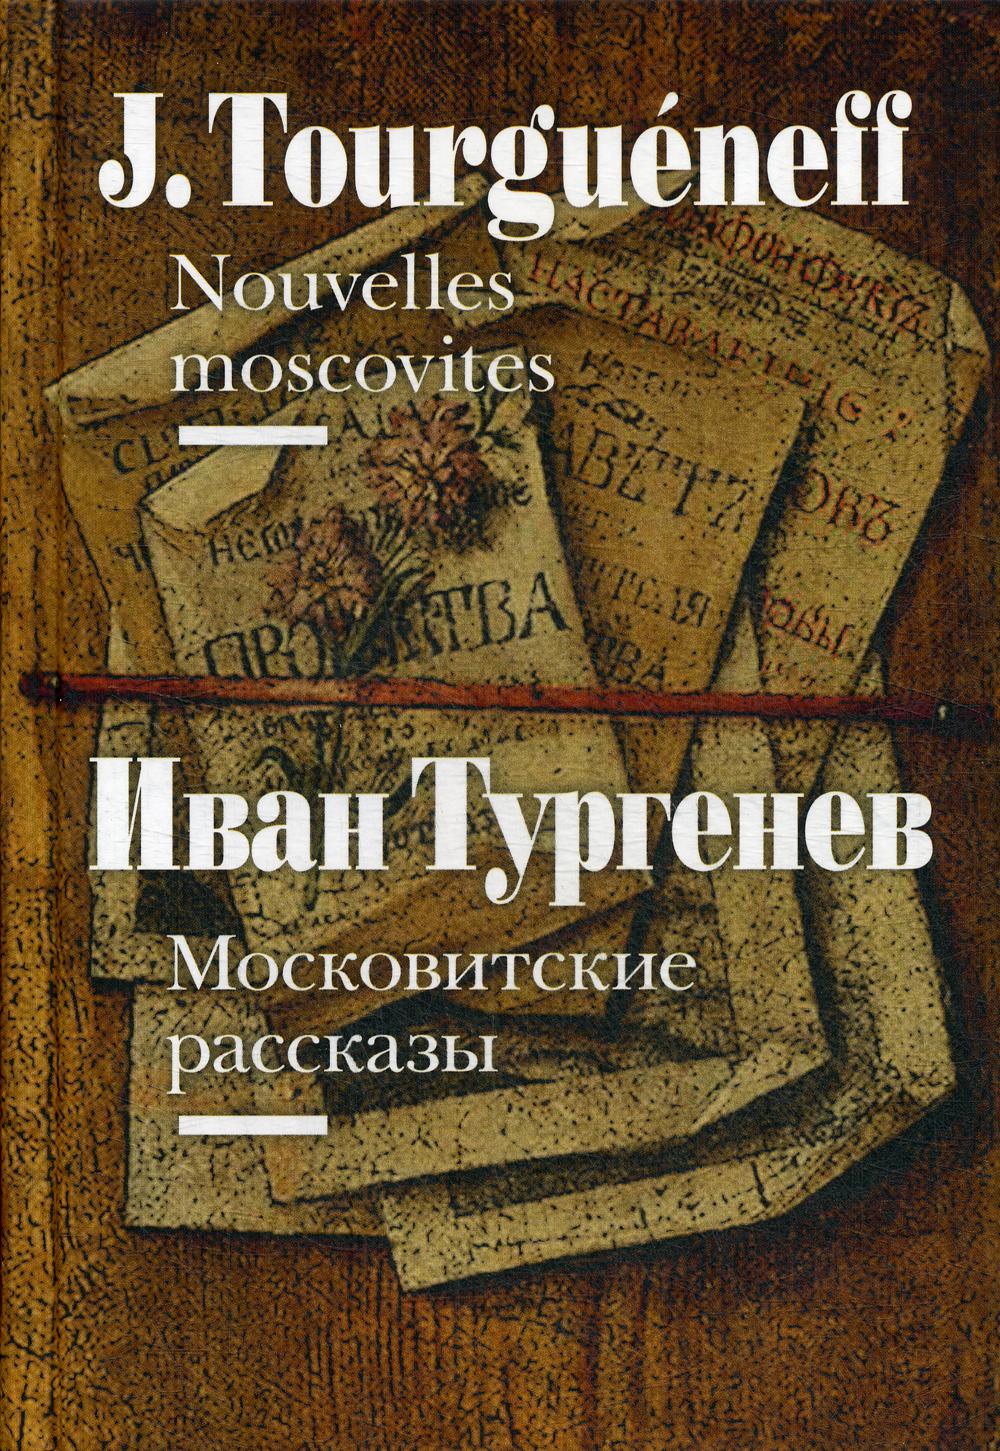 Московитские рассказы = Nouvelles moscovites (на французском и русском языках)